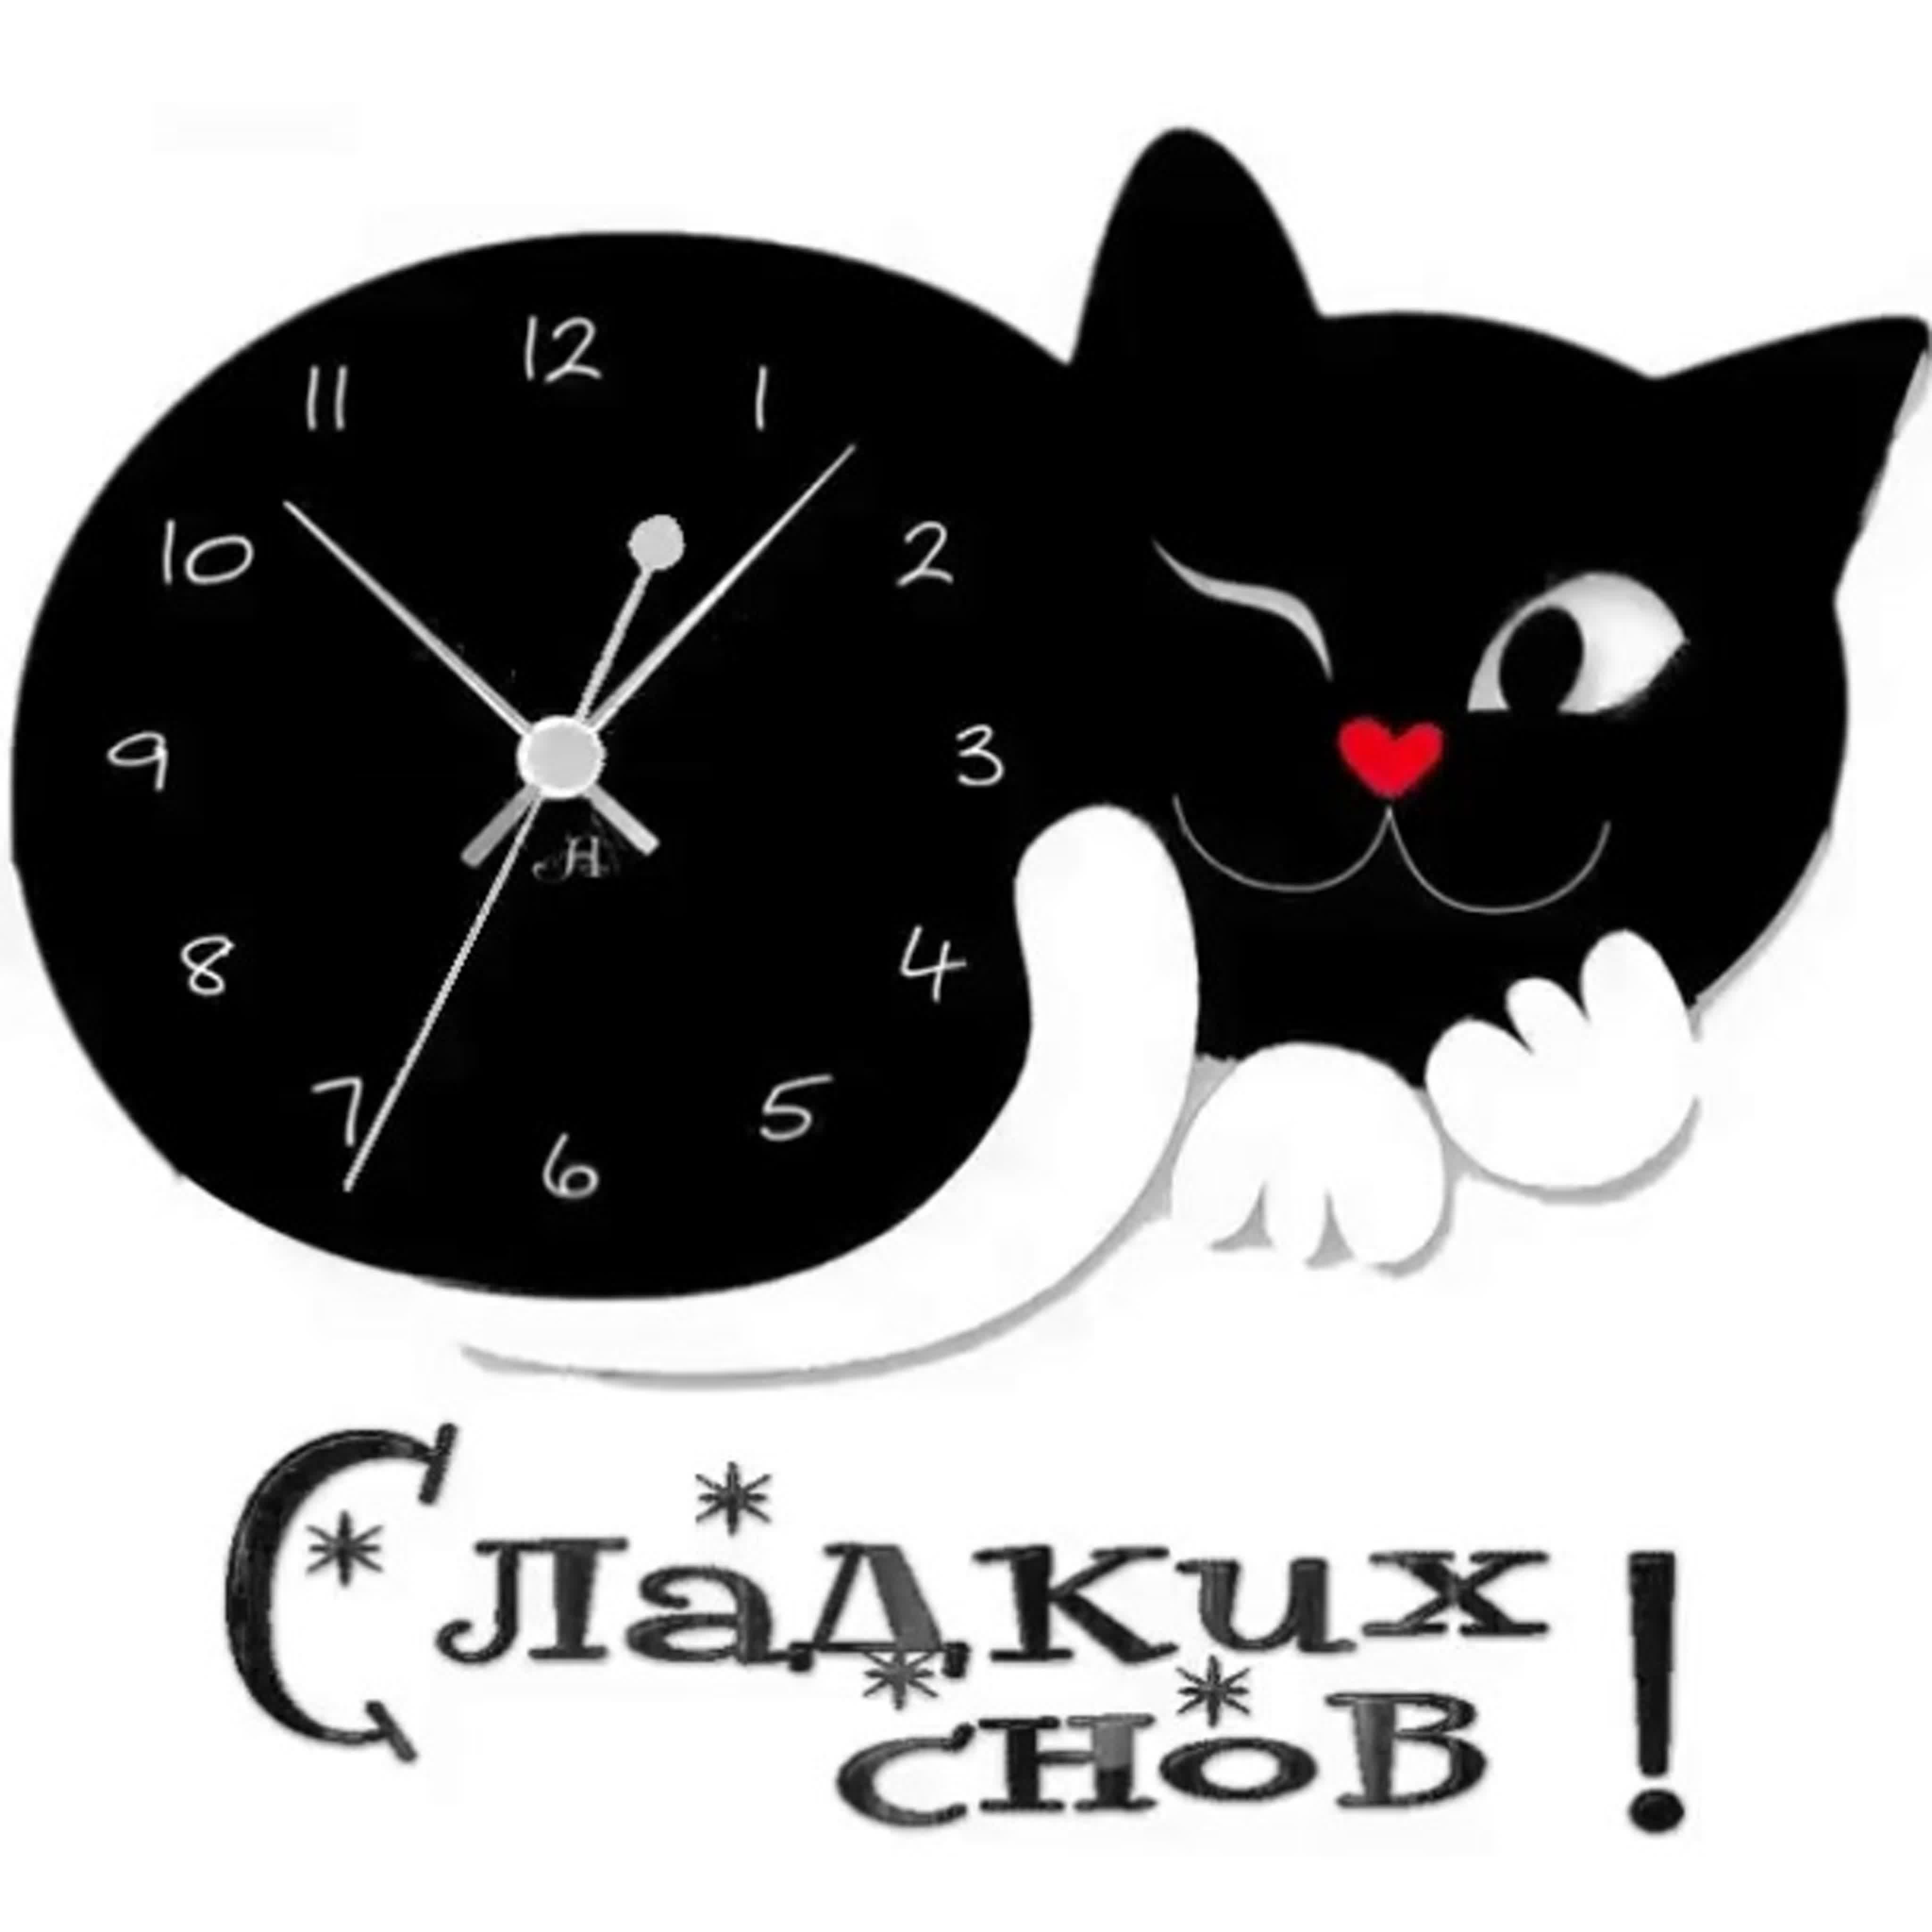 Завтра час ночи. Часы. Часы с котом настенные. Часы в виде котиков. Часы в форме кота настенные.